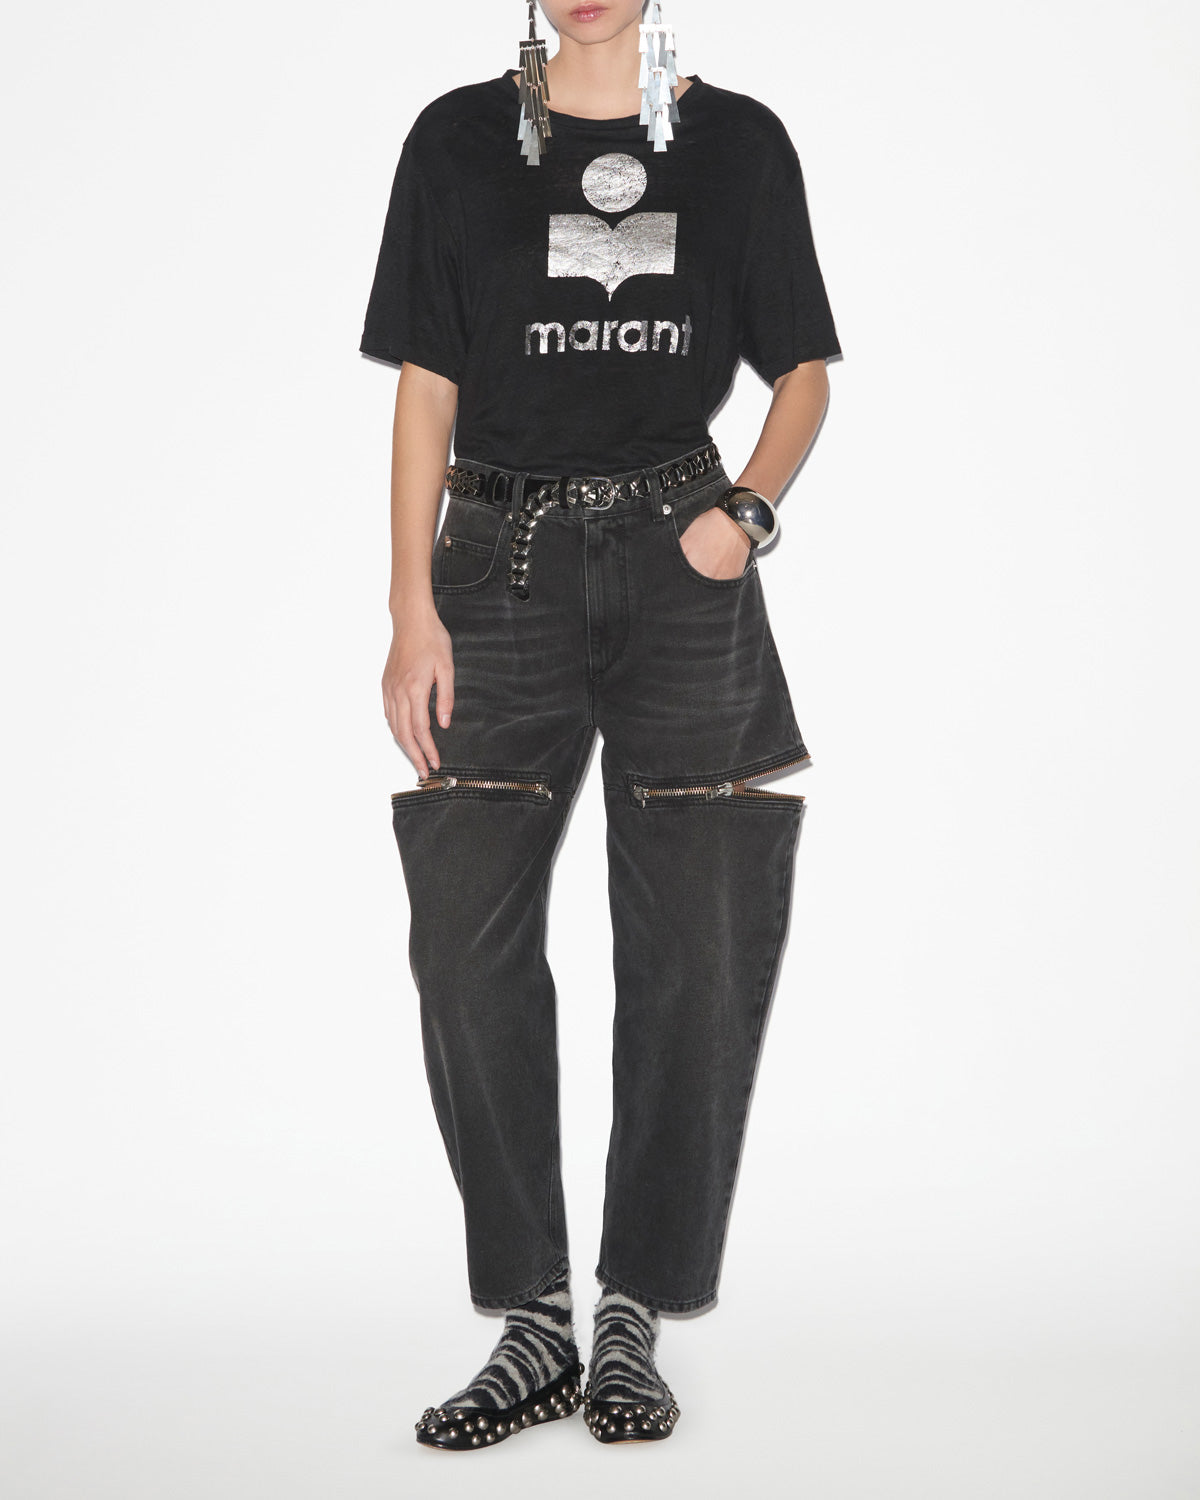 즈웰(zewel) 티셔츠 Woman 검은색 8